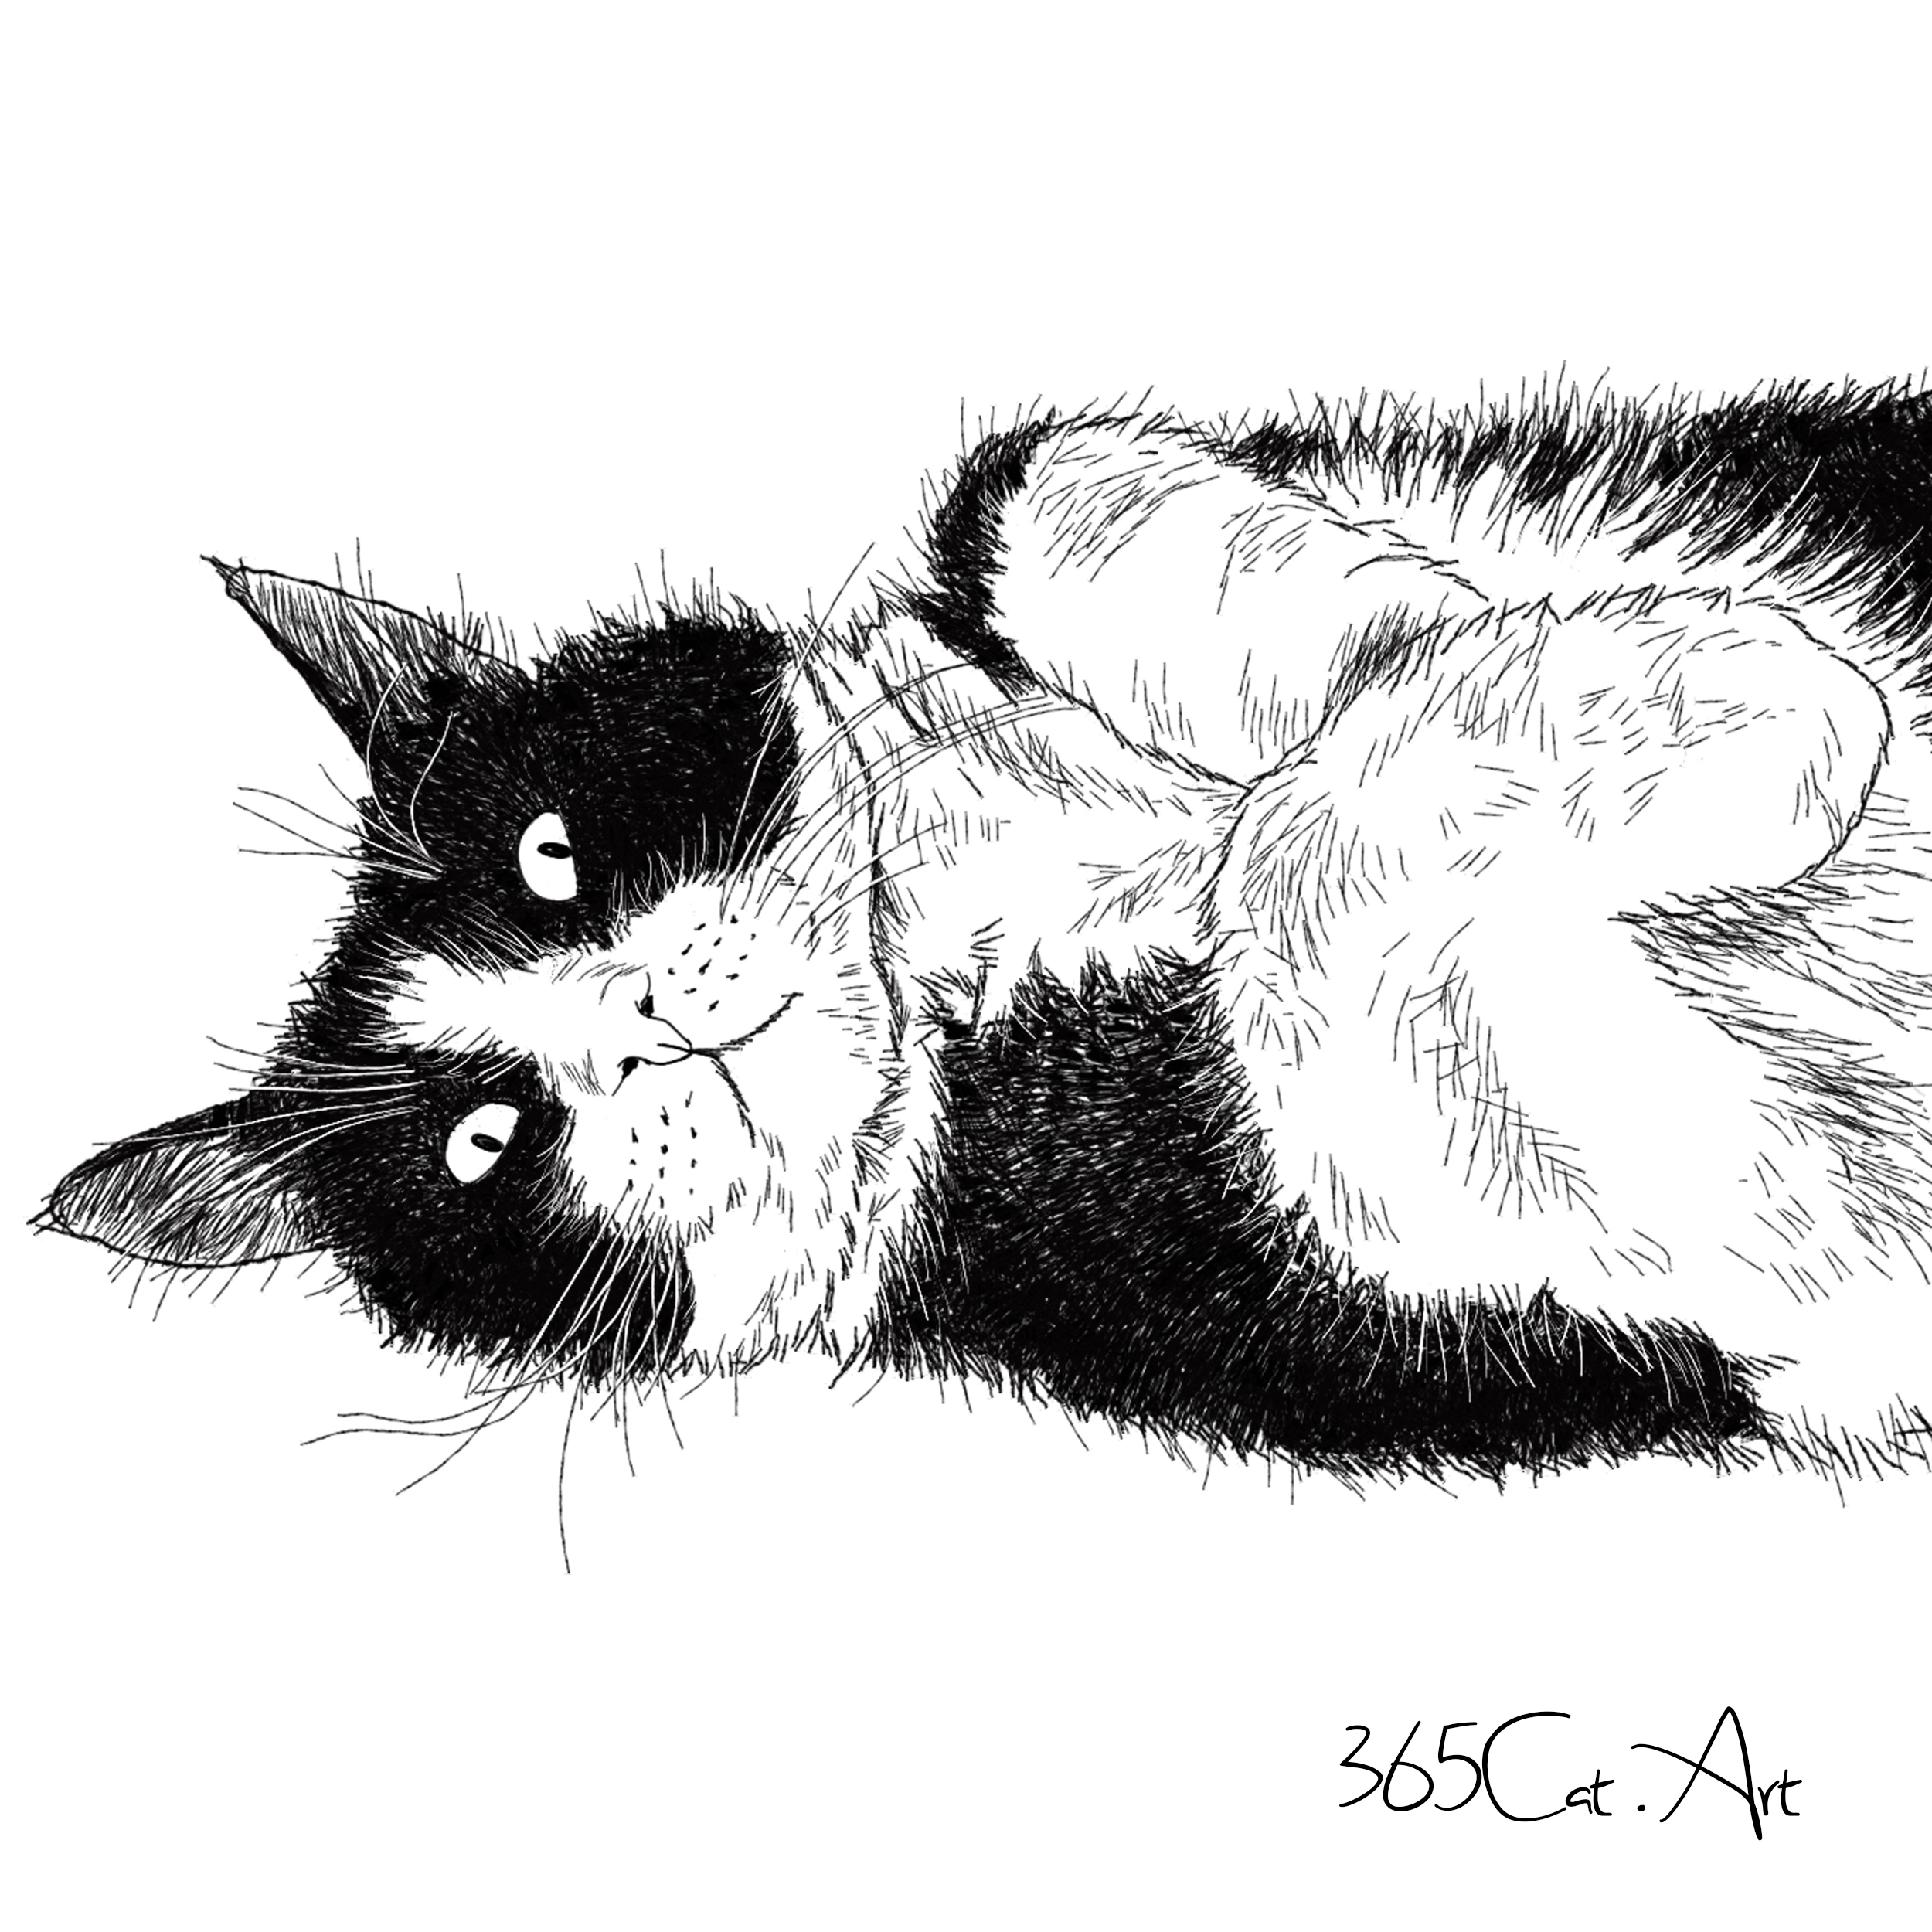 猫の手描きイラスト 似顔絵 白黒 作成 上半身 動物 人間可 猫雑貨 グッズ通販 猫や動物イラスト 似顔絵作成 365cat Art